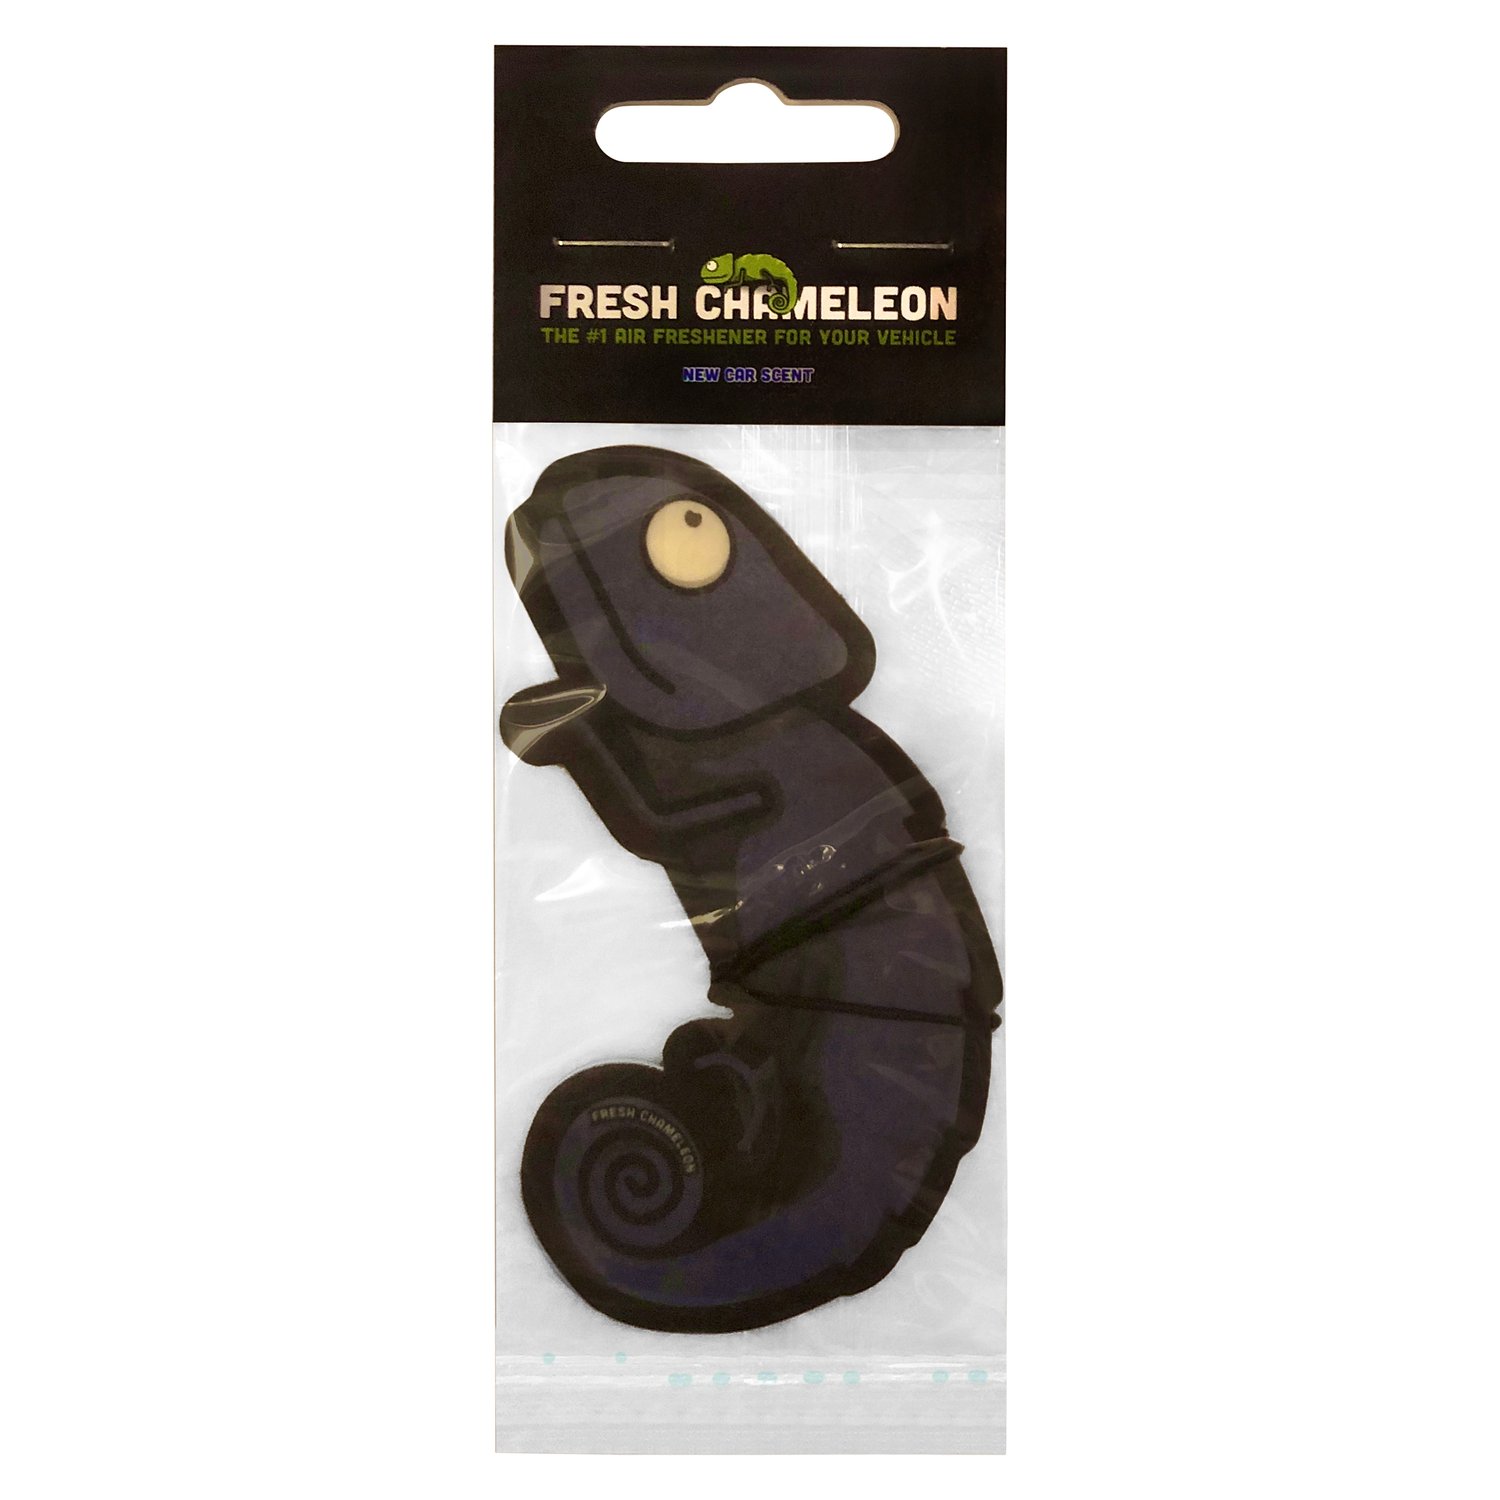 Fresh Chameleon 2D Car Air Freshener (New Car Scent)